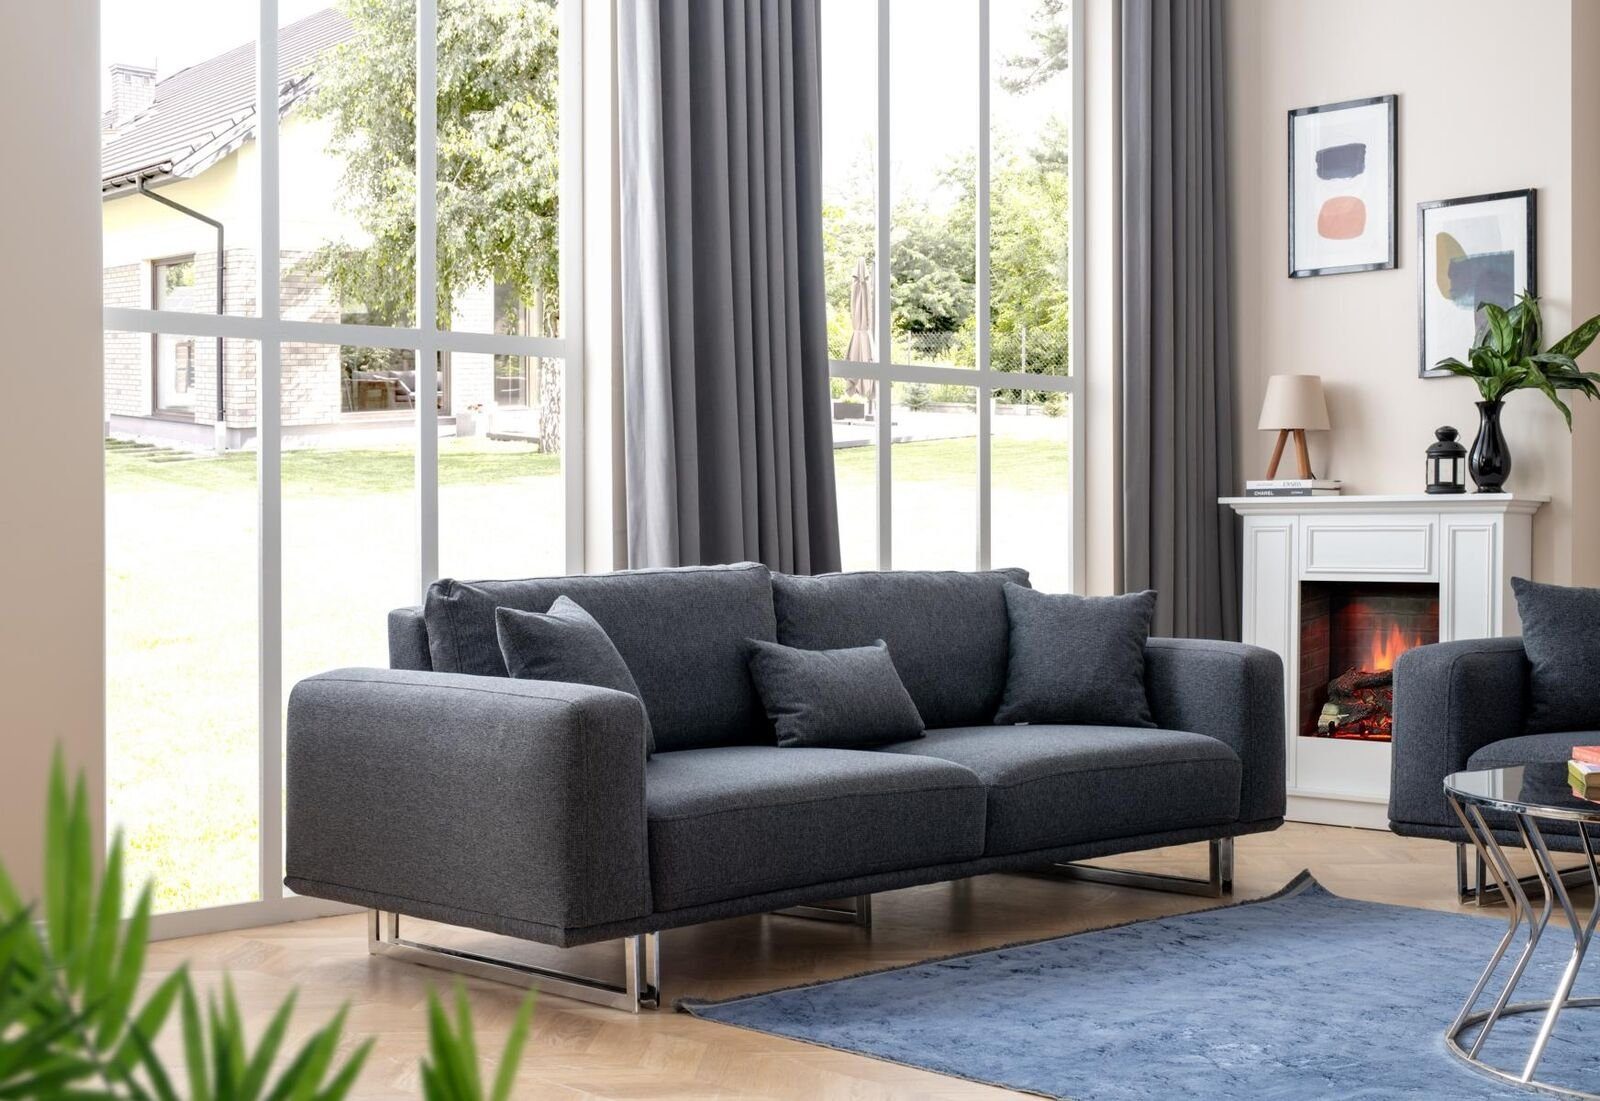 JVmoebel 3-Sitzer Modern Sofa 3 Sitzer Möbel 1 Made Europa Couchen Teile, in Einrichtung, Designer wohnzimmer in